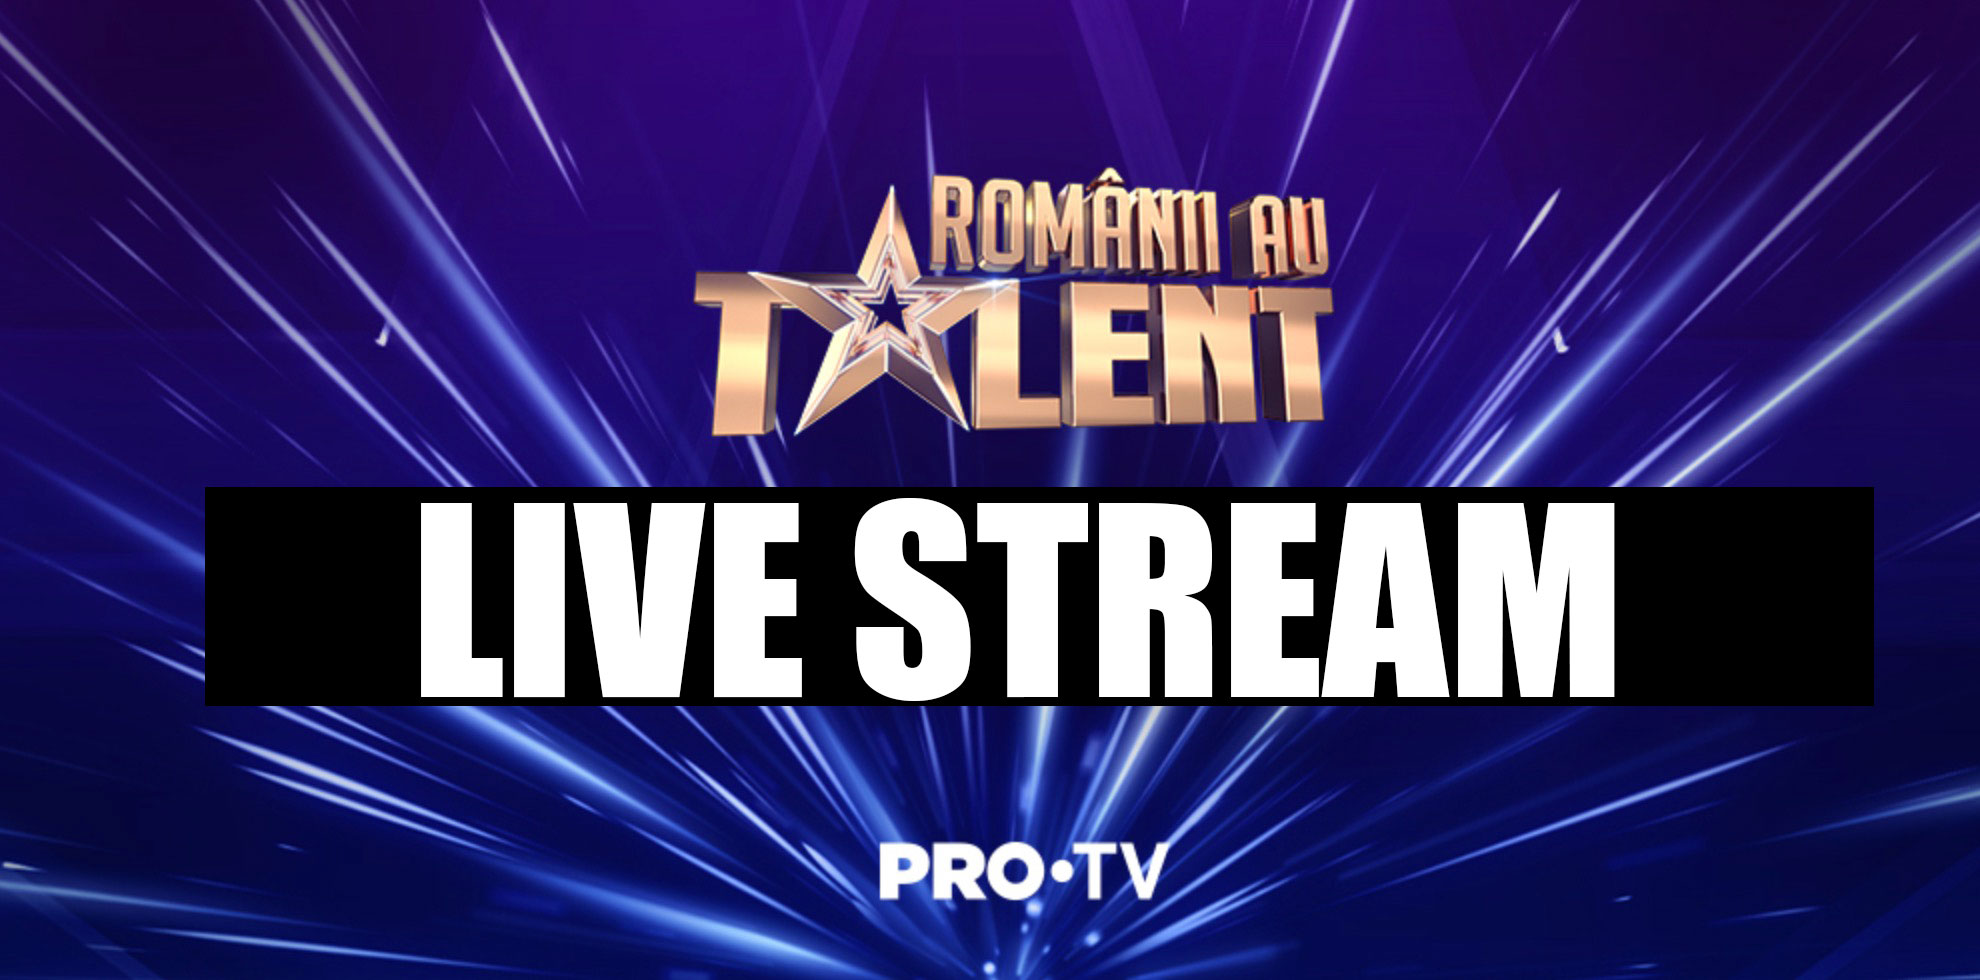 Românii au talent Live Stream online Pro TV - Urmărește emisiunea gratuit